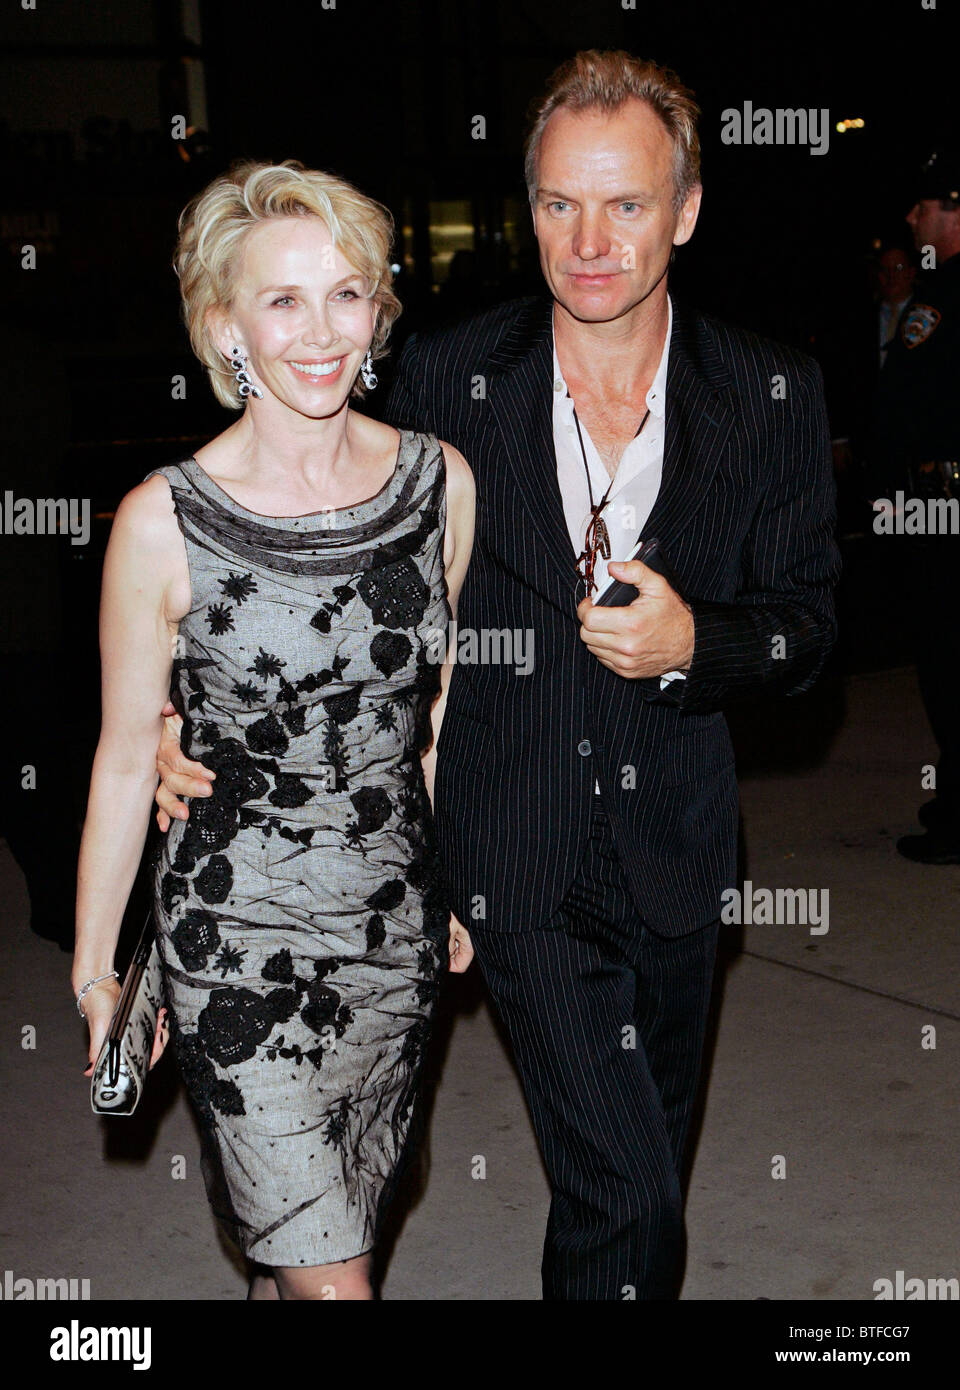 La estrella del pop Sting y su esposa Trudie Styler en el Museo de Arte Moderno (MOMA), Nueva York, EE.UU. Foto de stock